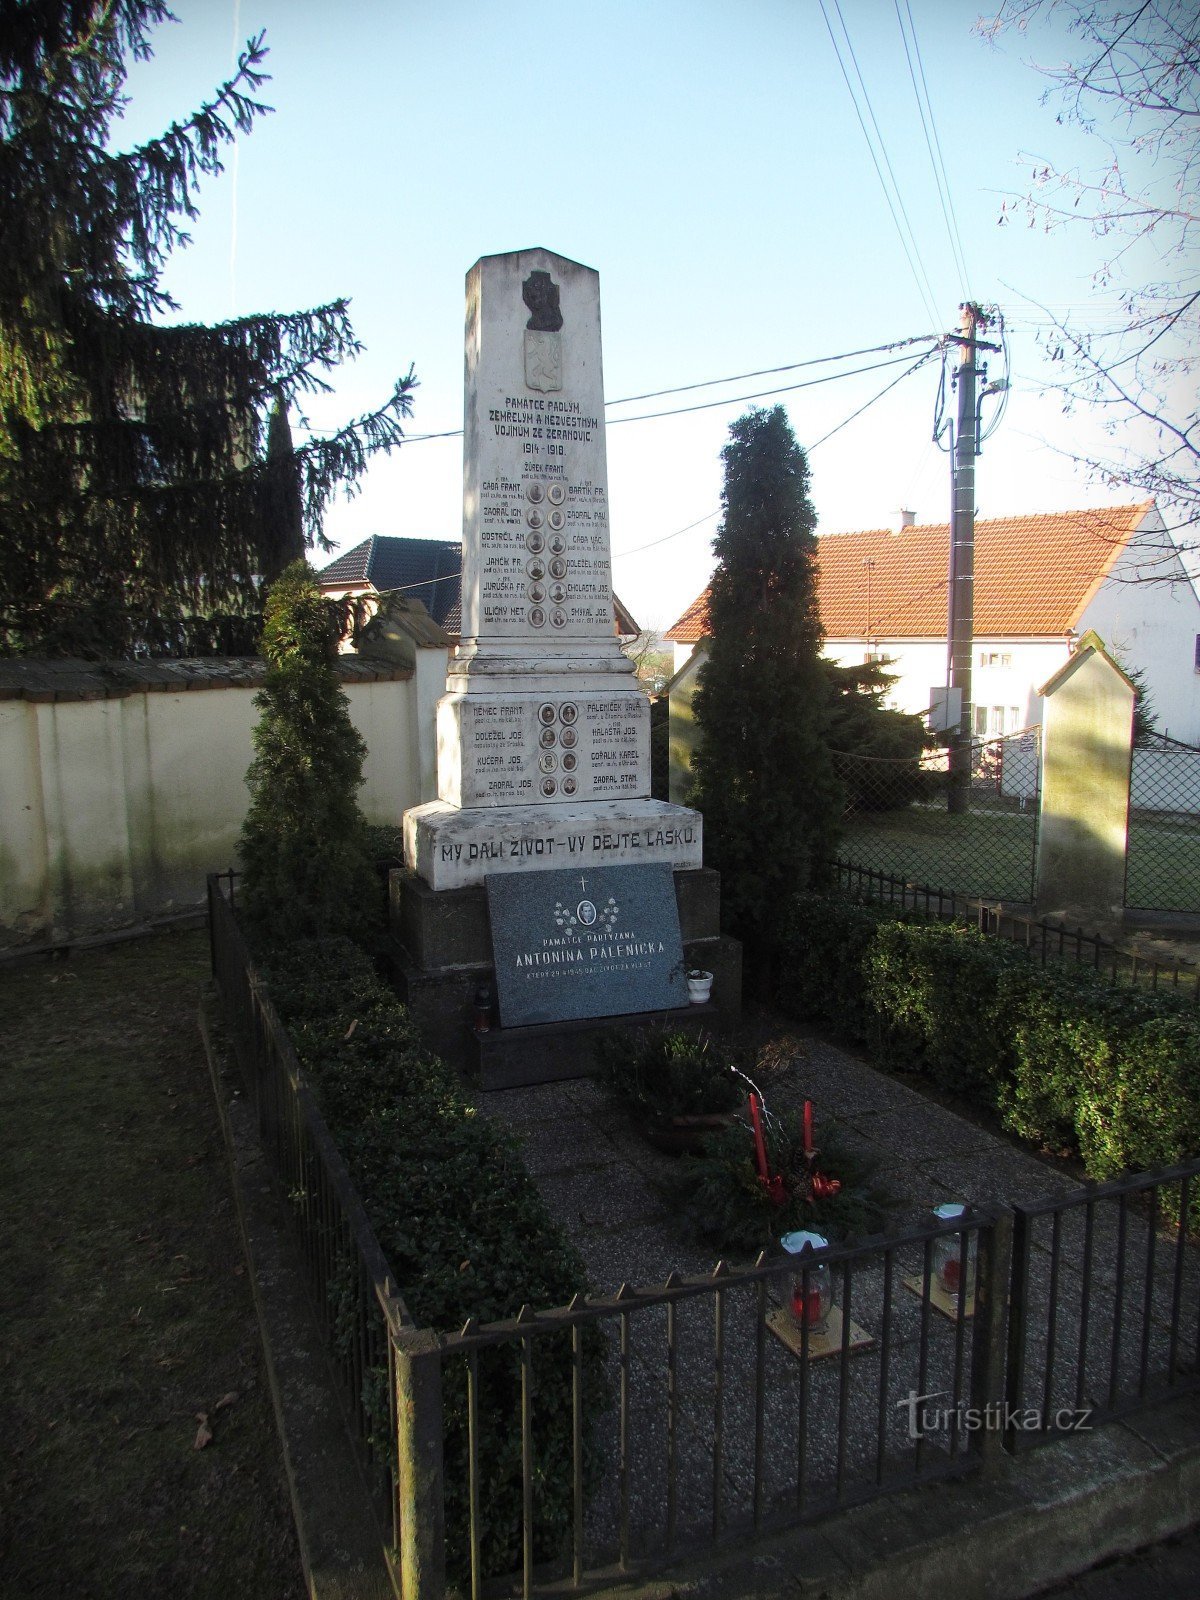 Žeranovice - Đài tưởng niệm những người đã khuất